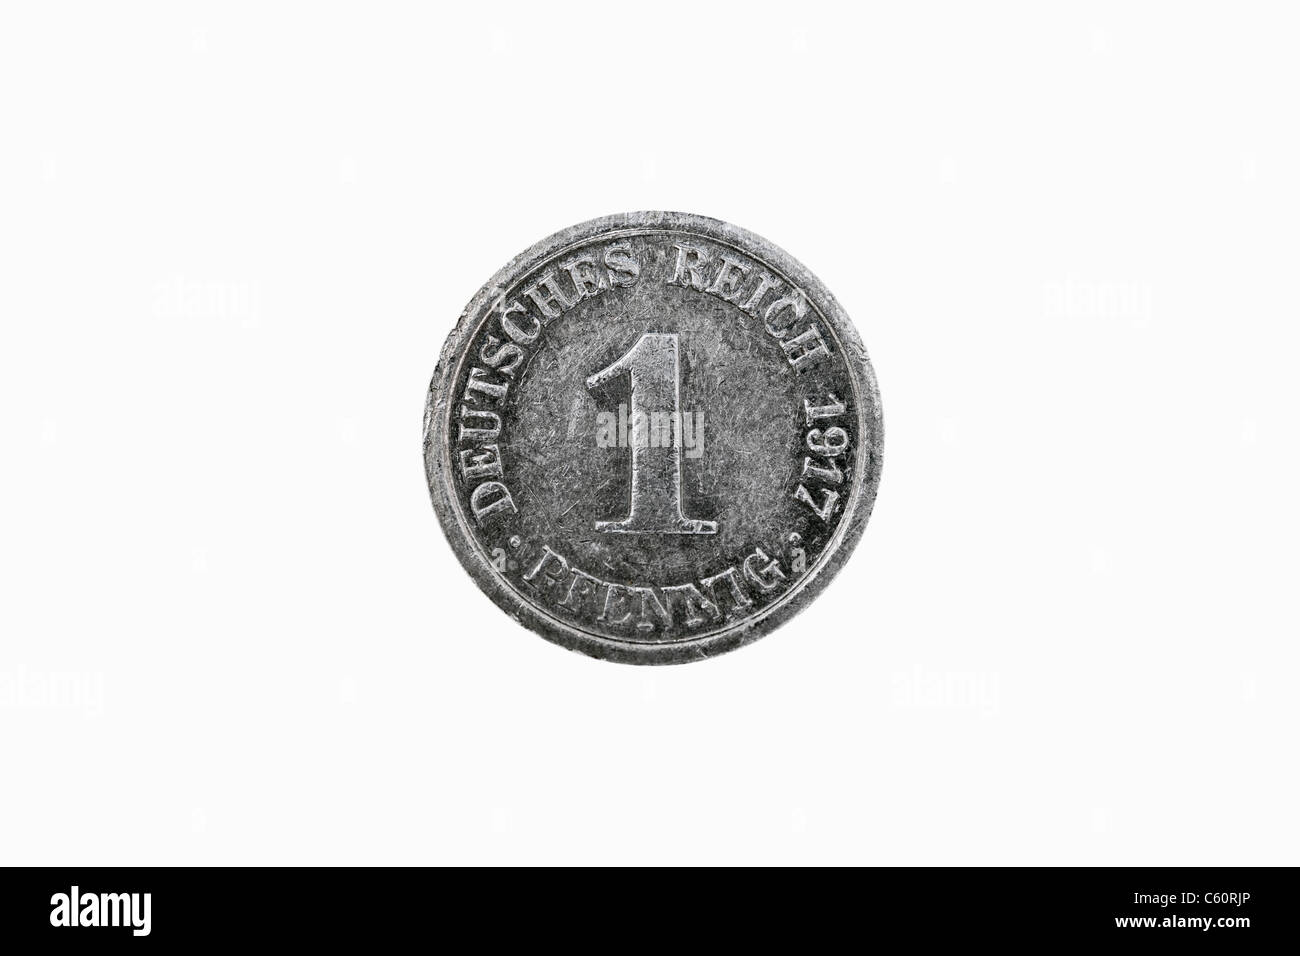 Detail-Foto einer 1 Pfennig-Münze des Deutschen Reiches aus dem Jahr 1917 Stockfoto